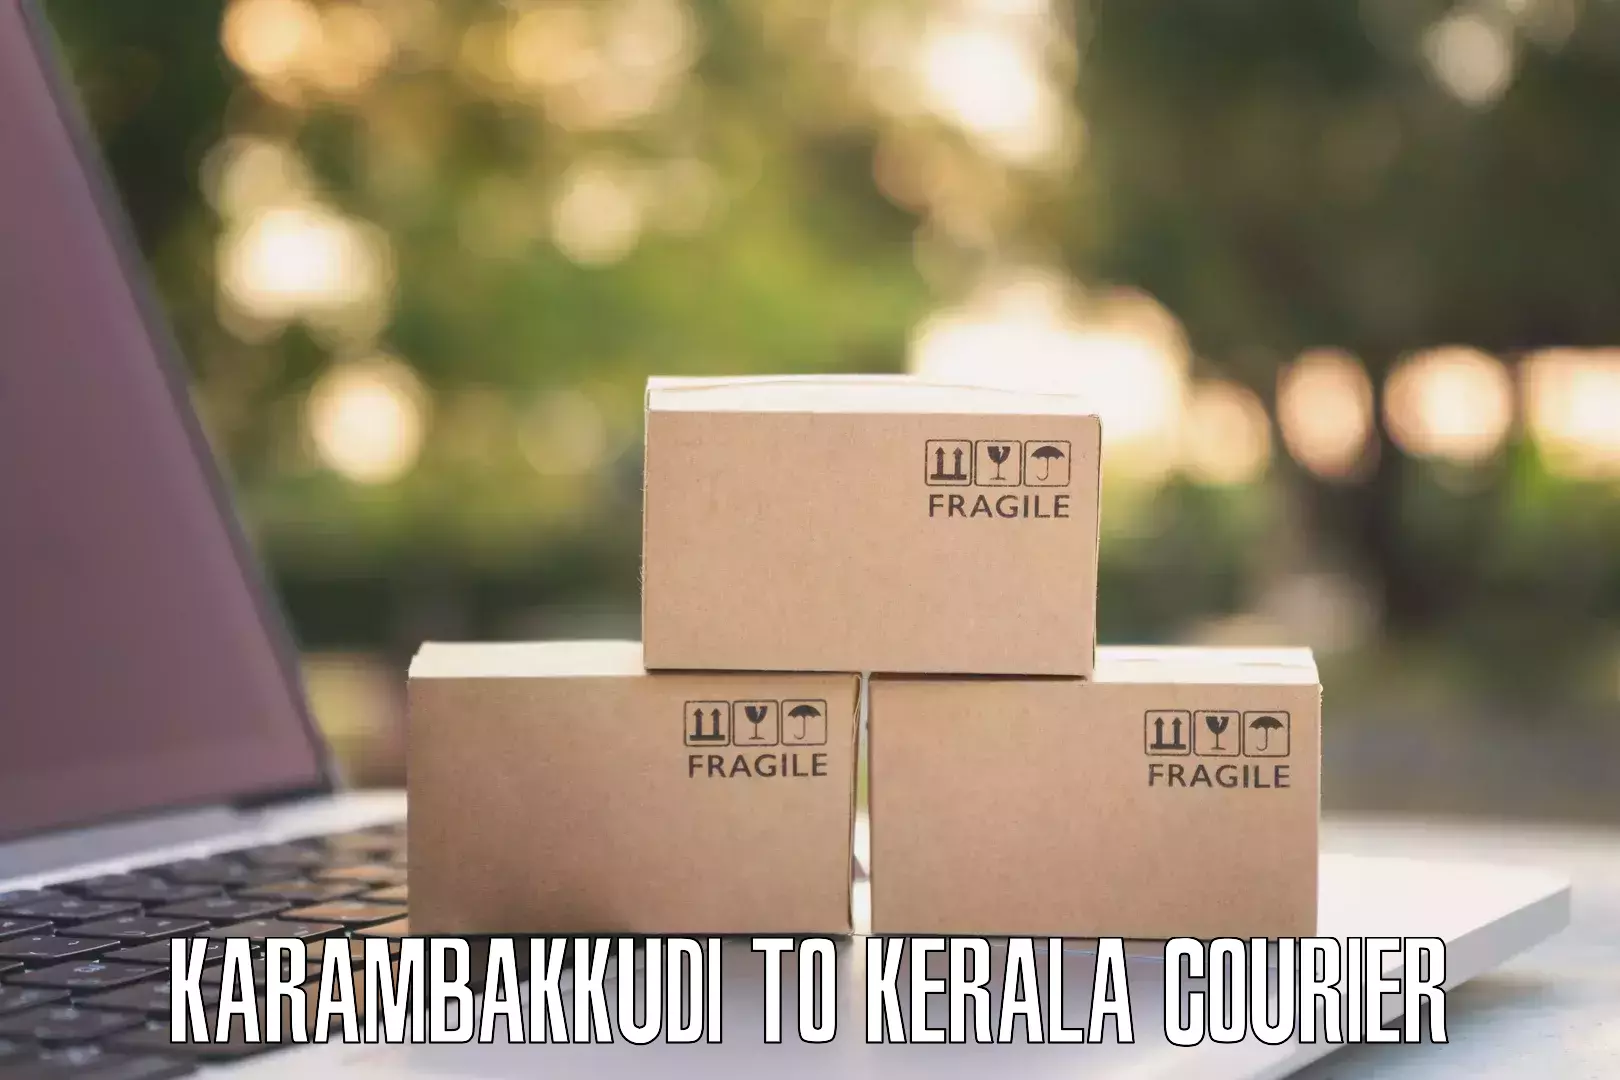 Special handling courier Karambakkudi to Mananthavady